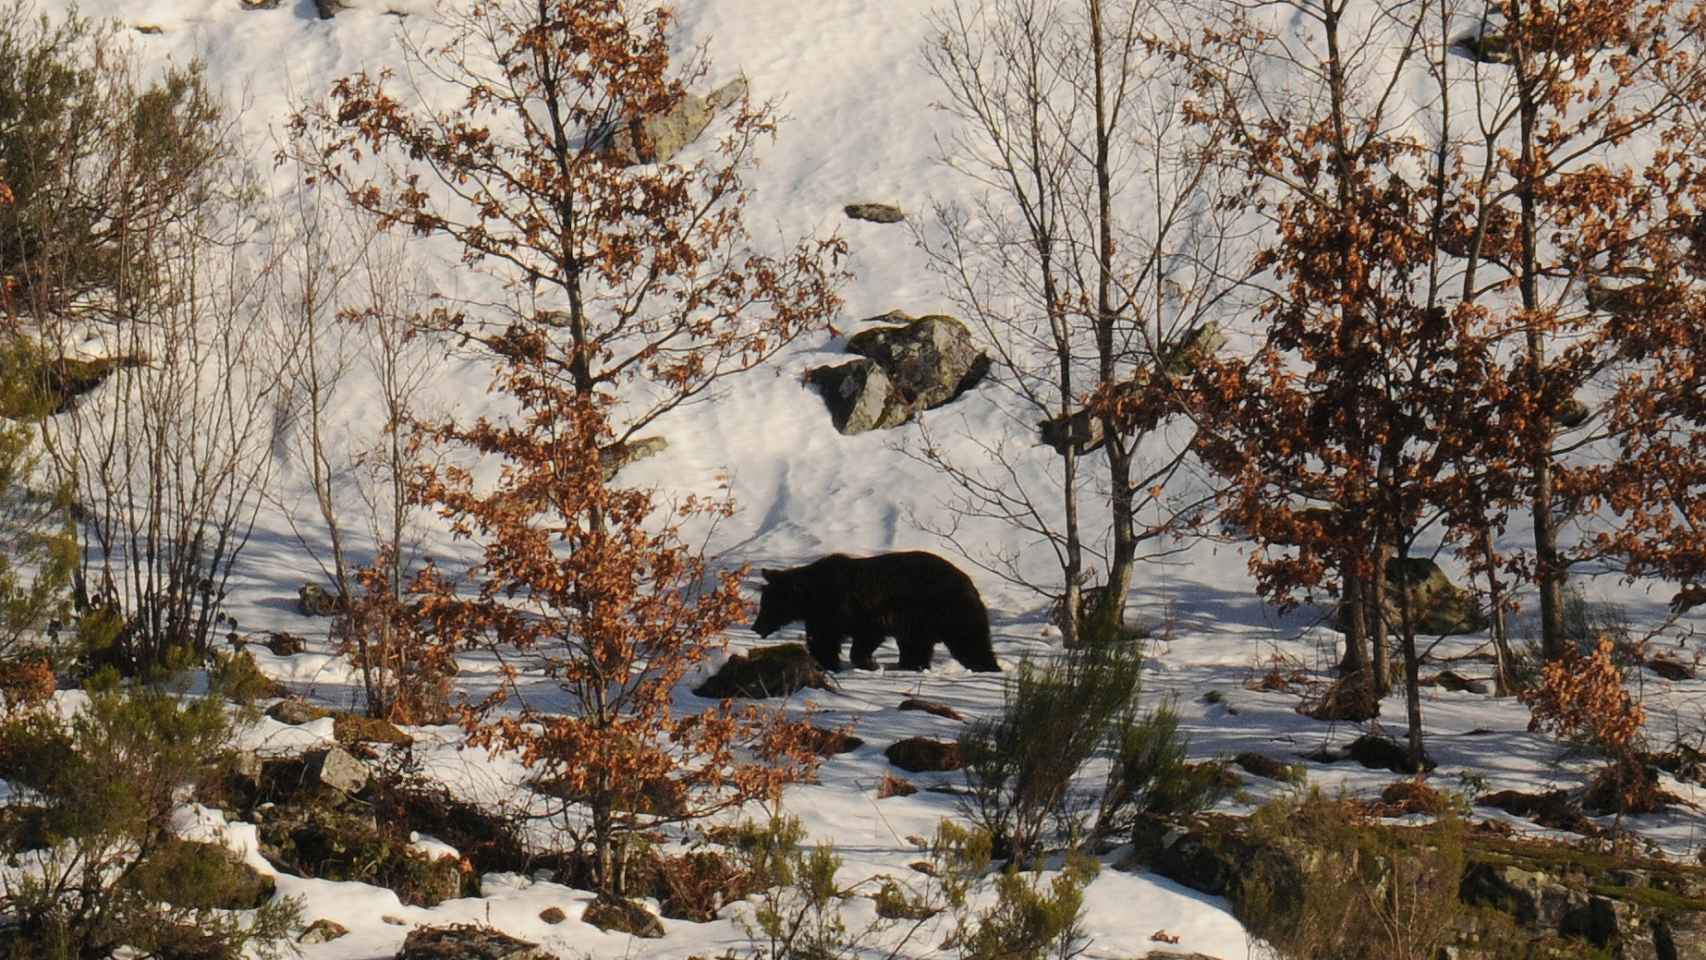 Fotografía de un oso recorriendo Páramo del Sil, en invierno.